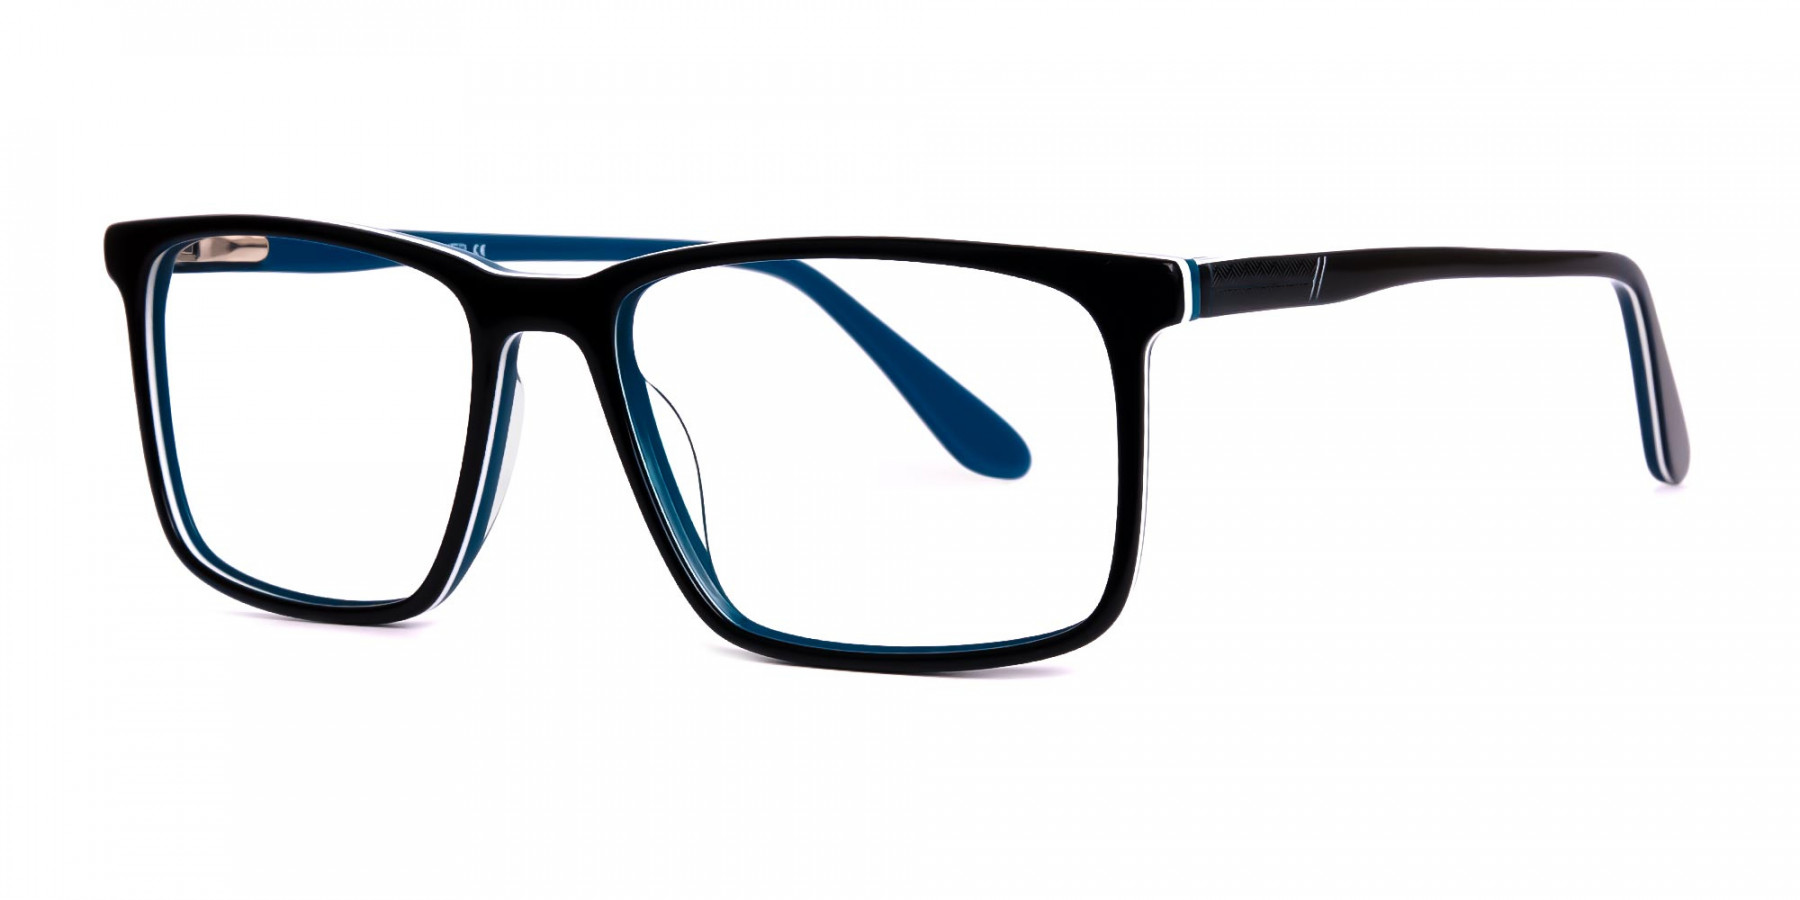 black-teal-full-rim-rectangular-glasses-frames-1